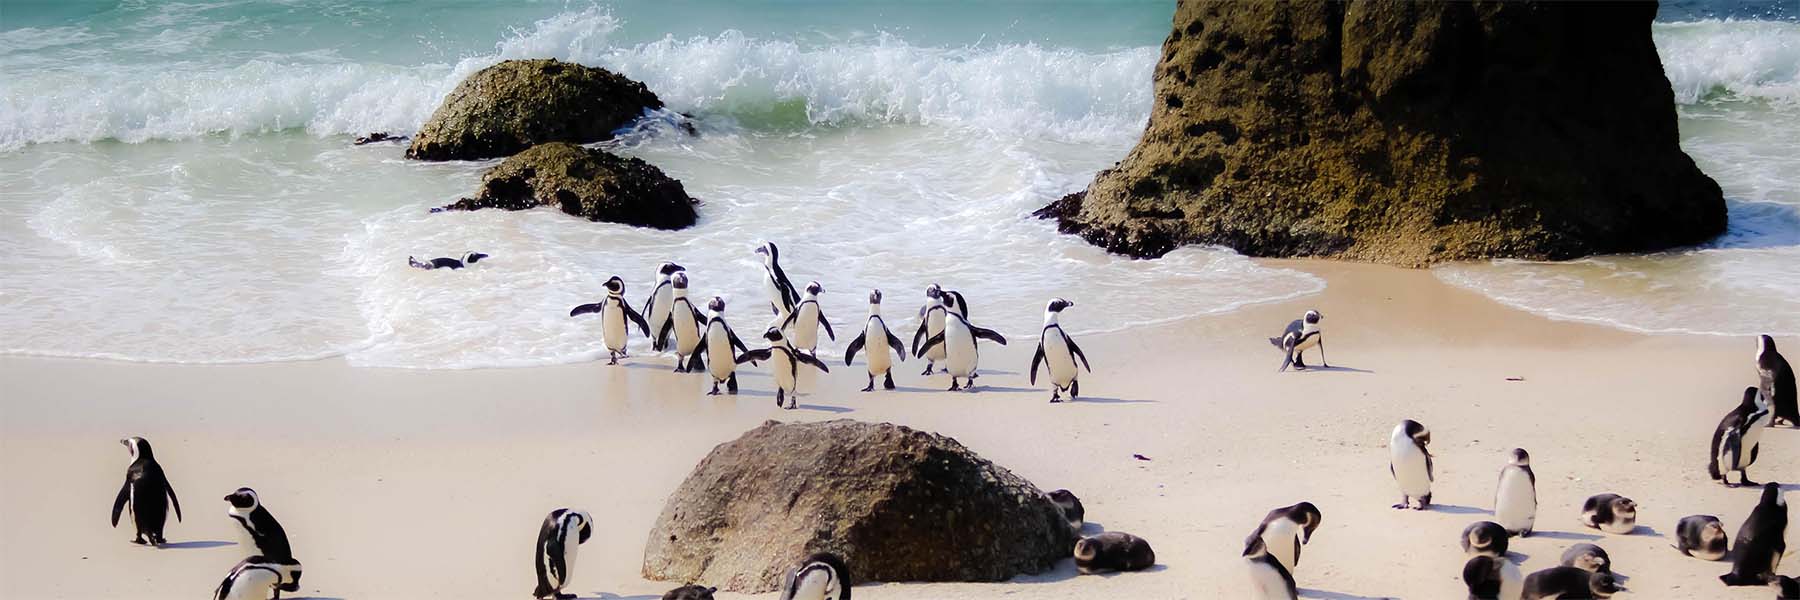 Penguins on a beach